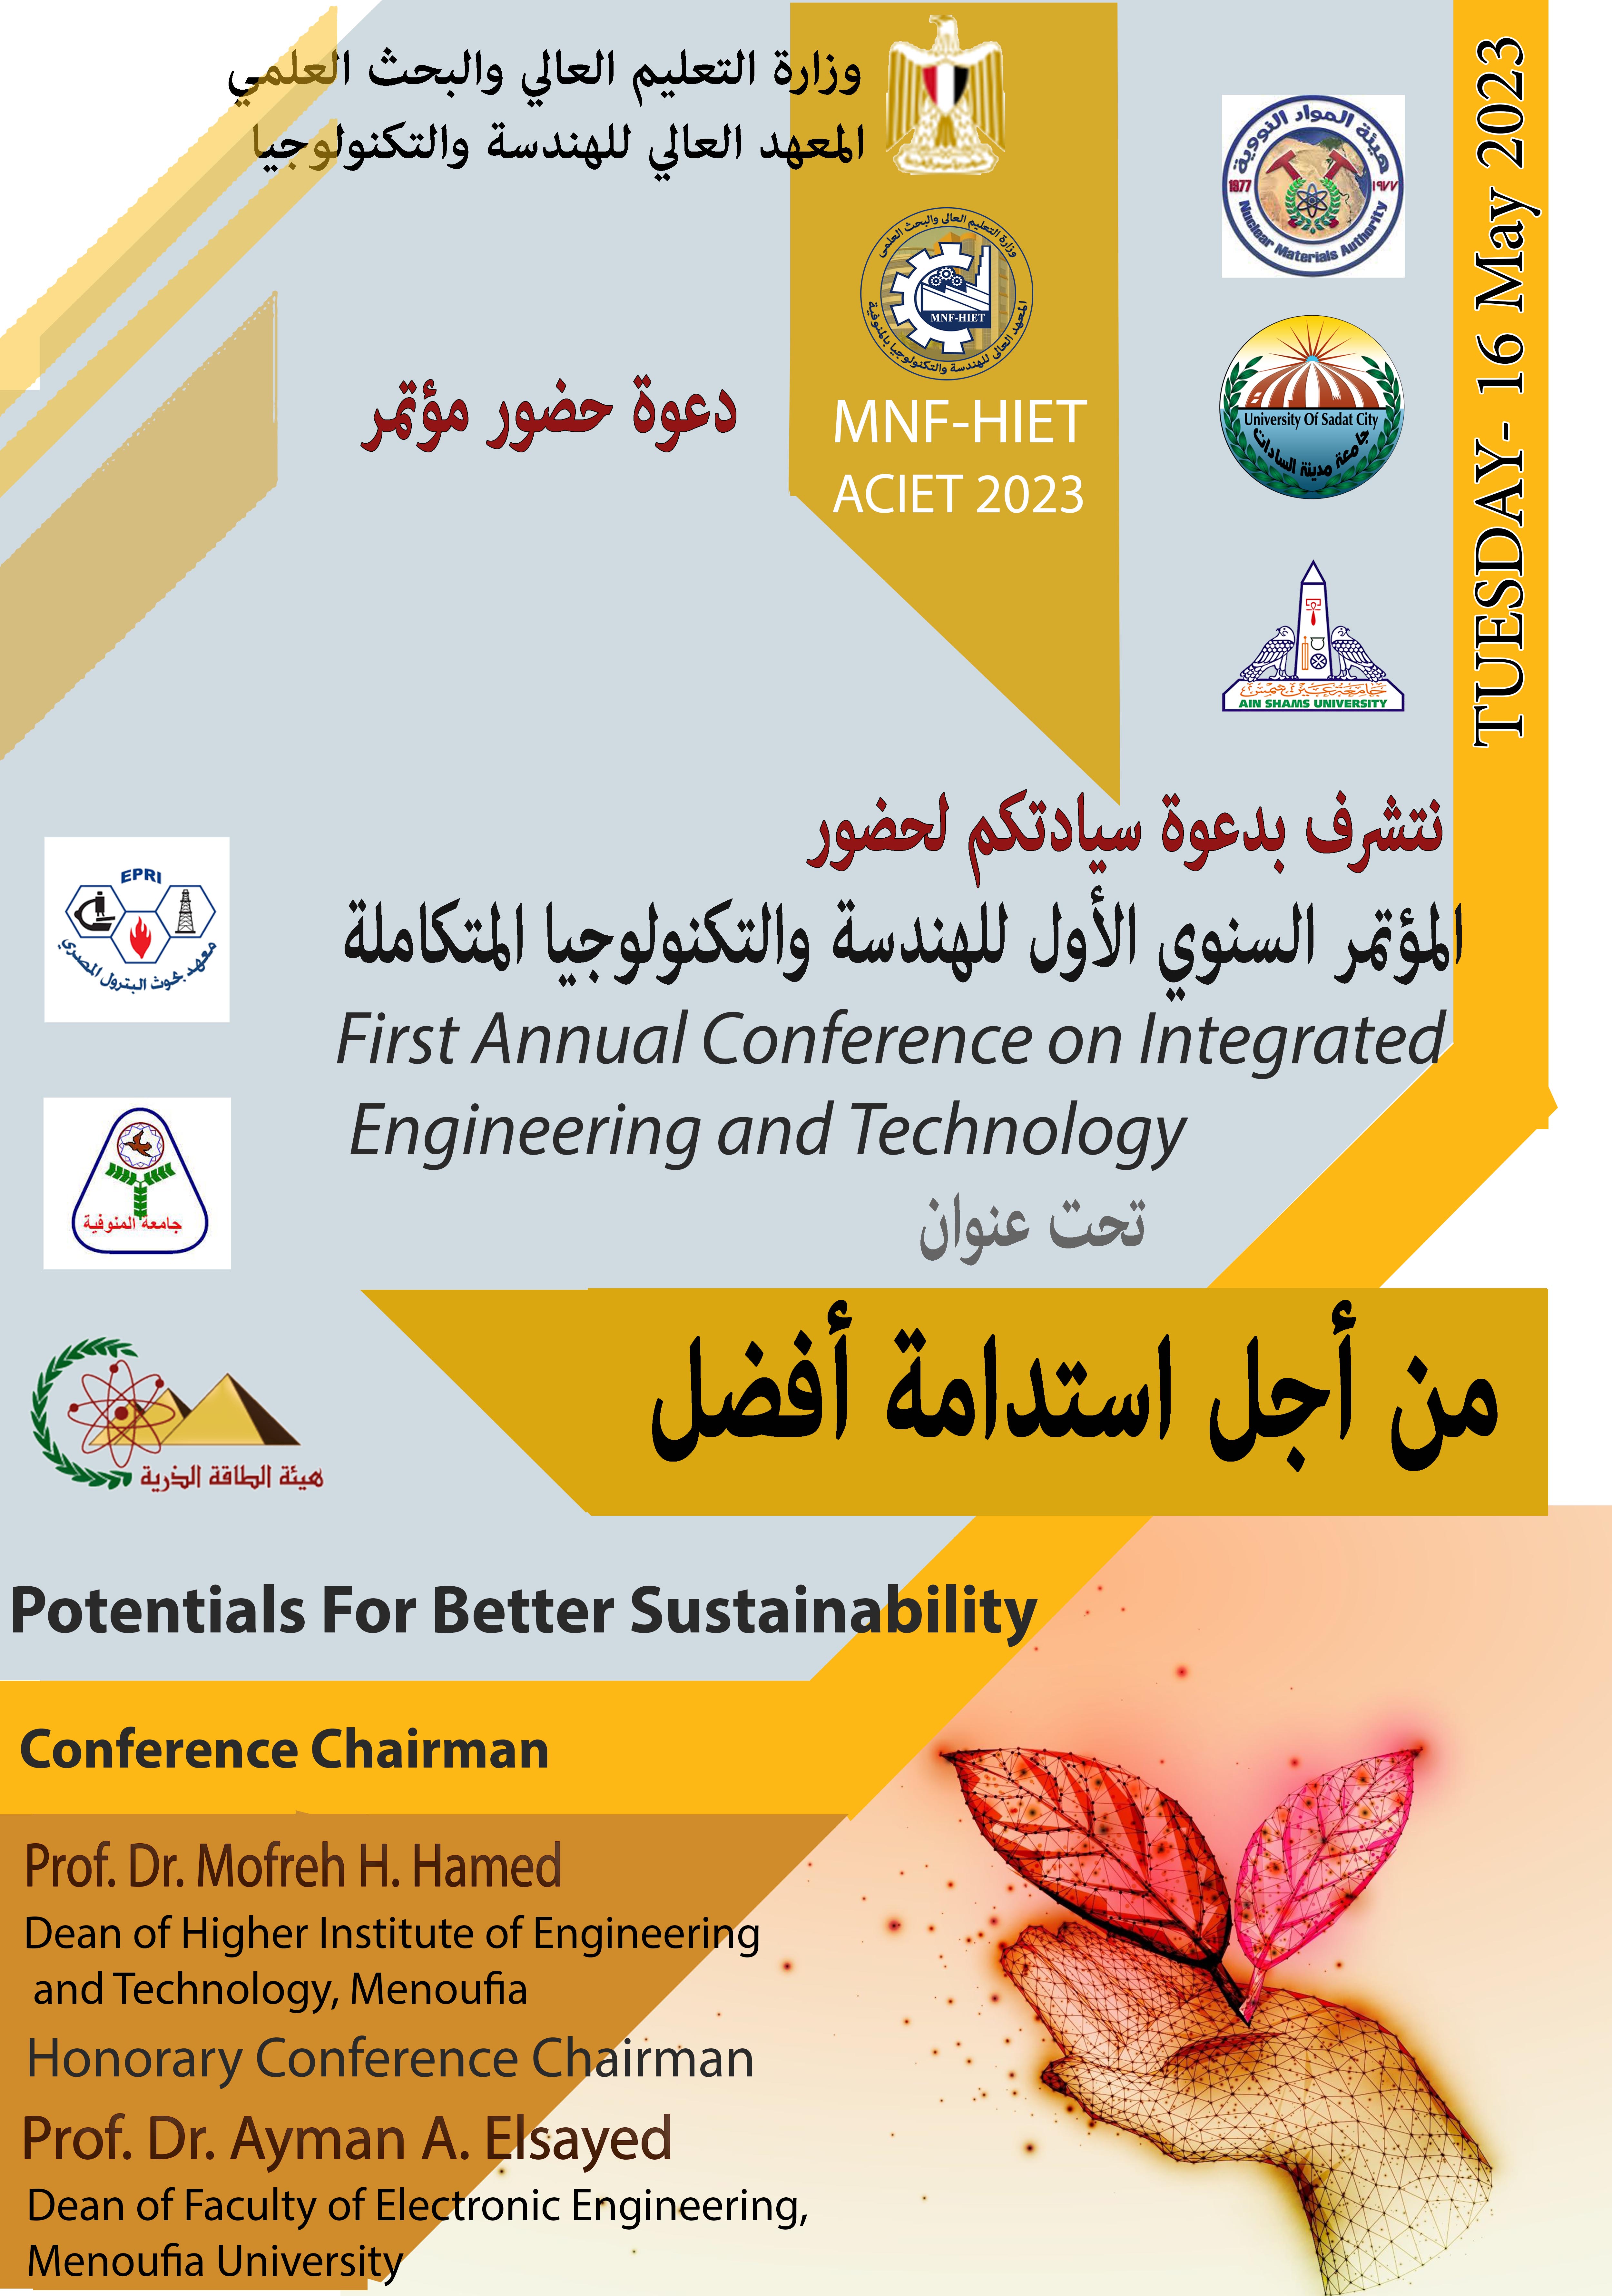 المؤتمر السنوي الأول للهندسة والتكنولوجيا المتكاملة